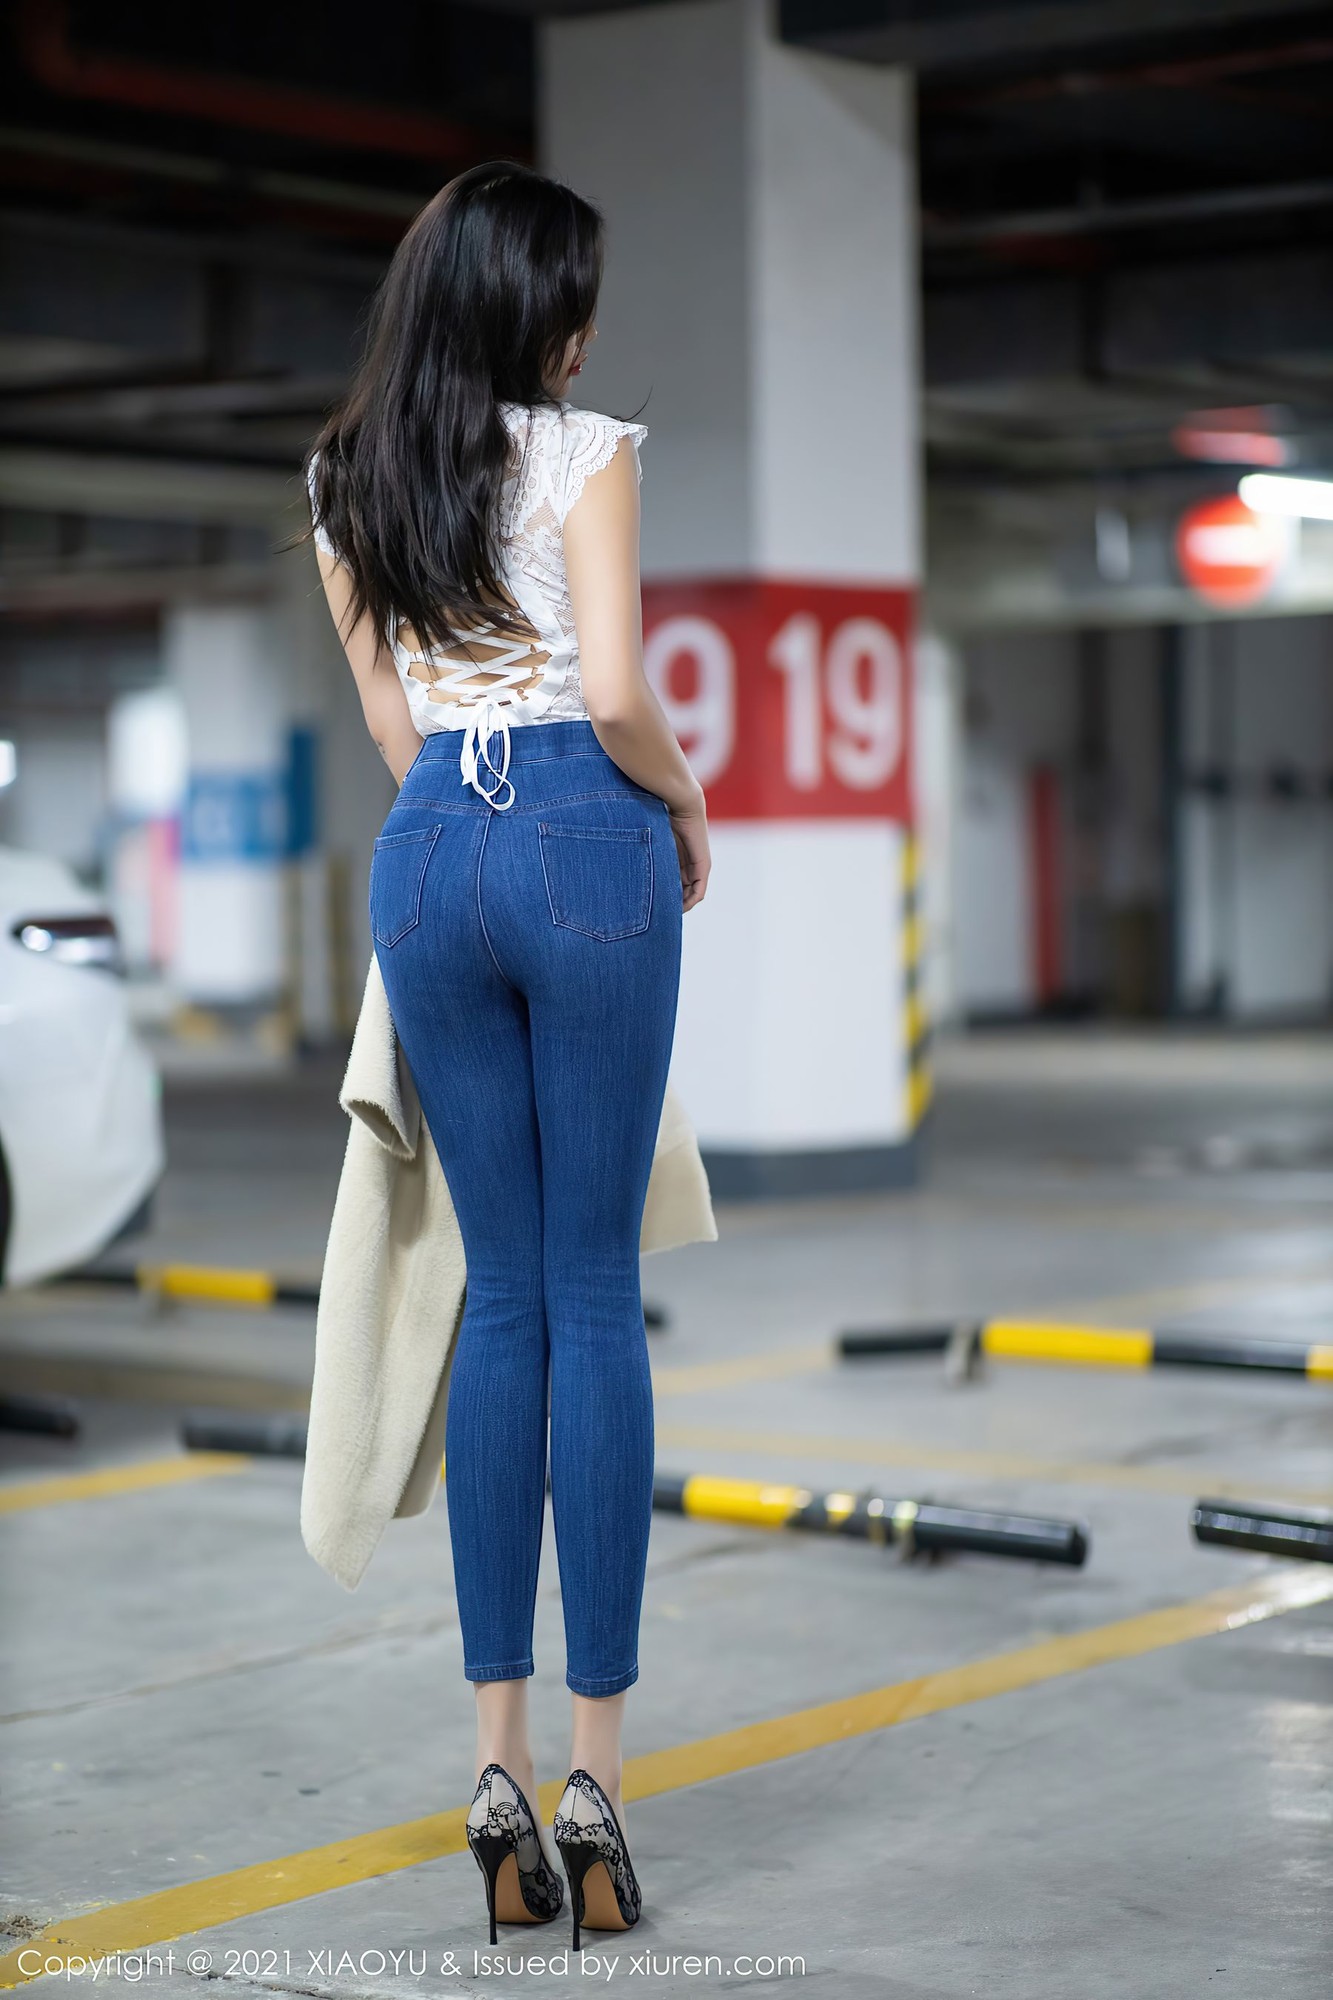 Women Asian Chinese Model Dark Hair Women Indoors Parking Lot Urban High Heels Jeans Brunette Long H 1333x2000